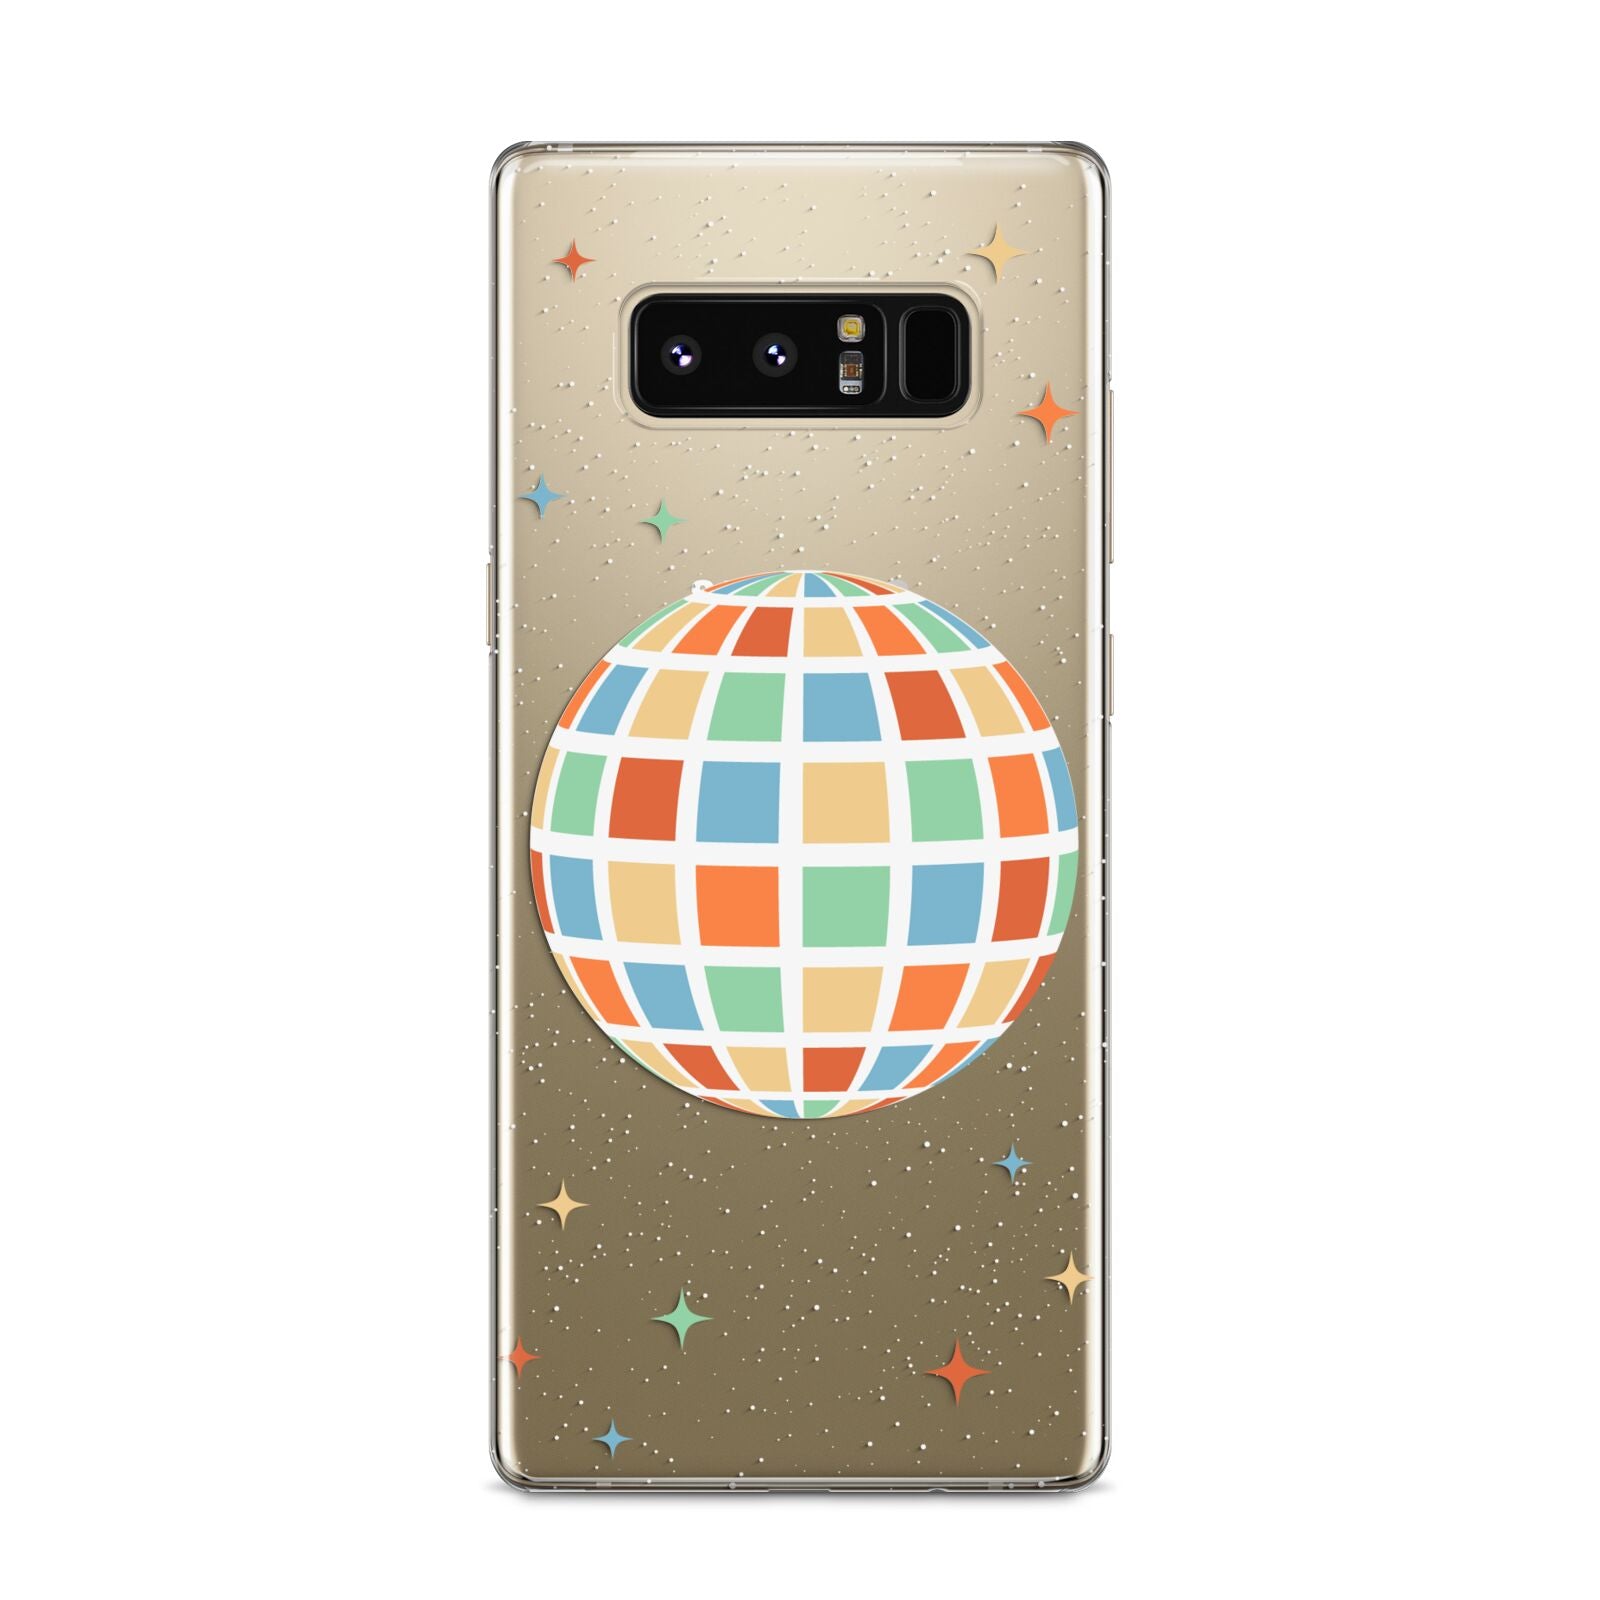 Disco Ball Samsung Galaxy S8 Case